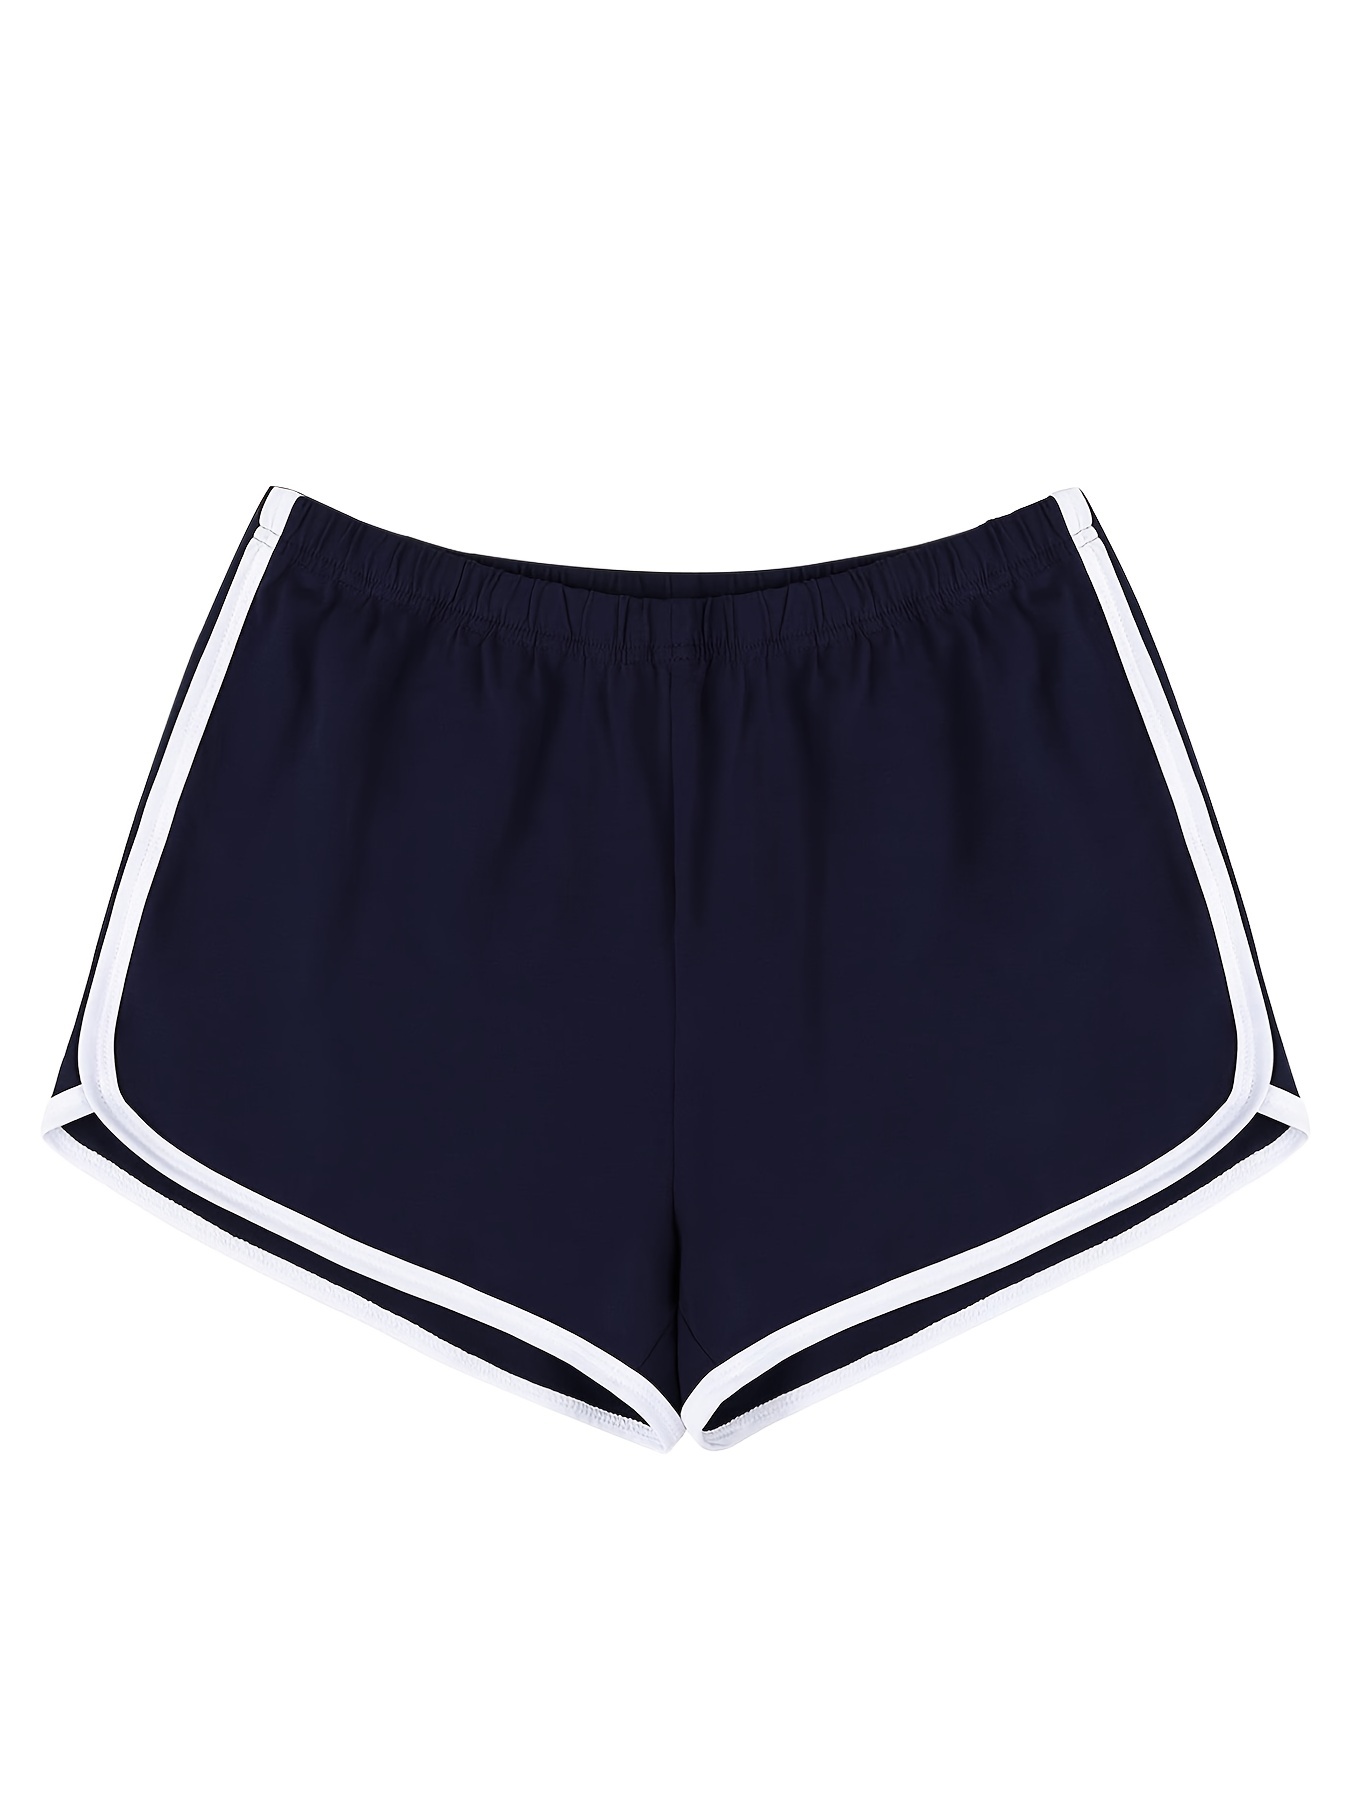 Republic of curves, Navy Blue Yoga Shorts With White stripe, Yoga Shorts